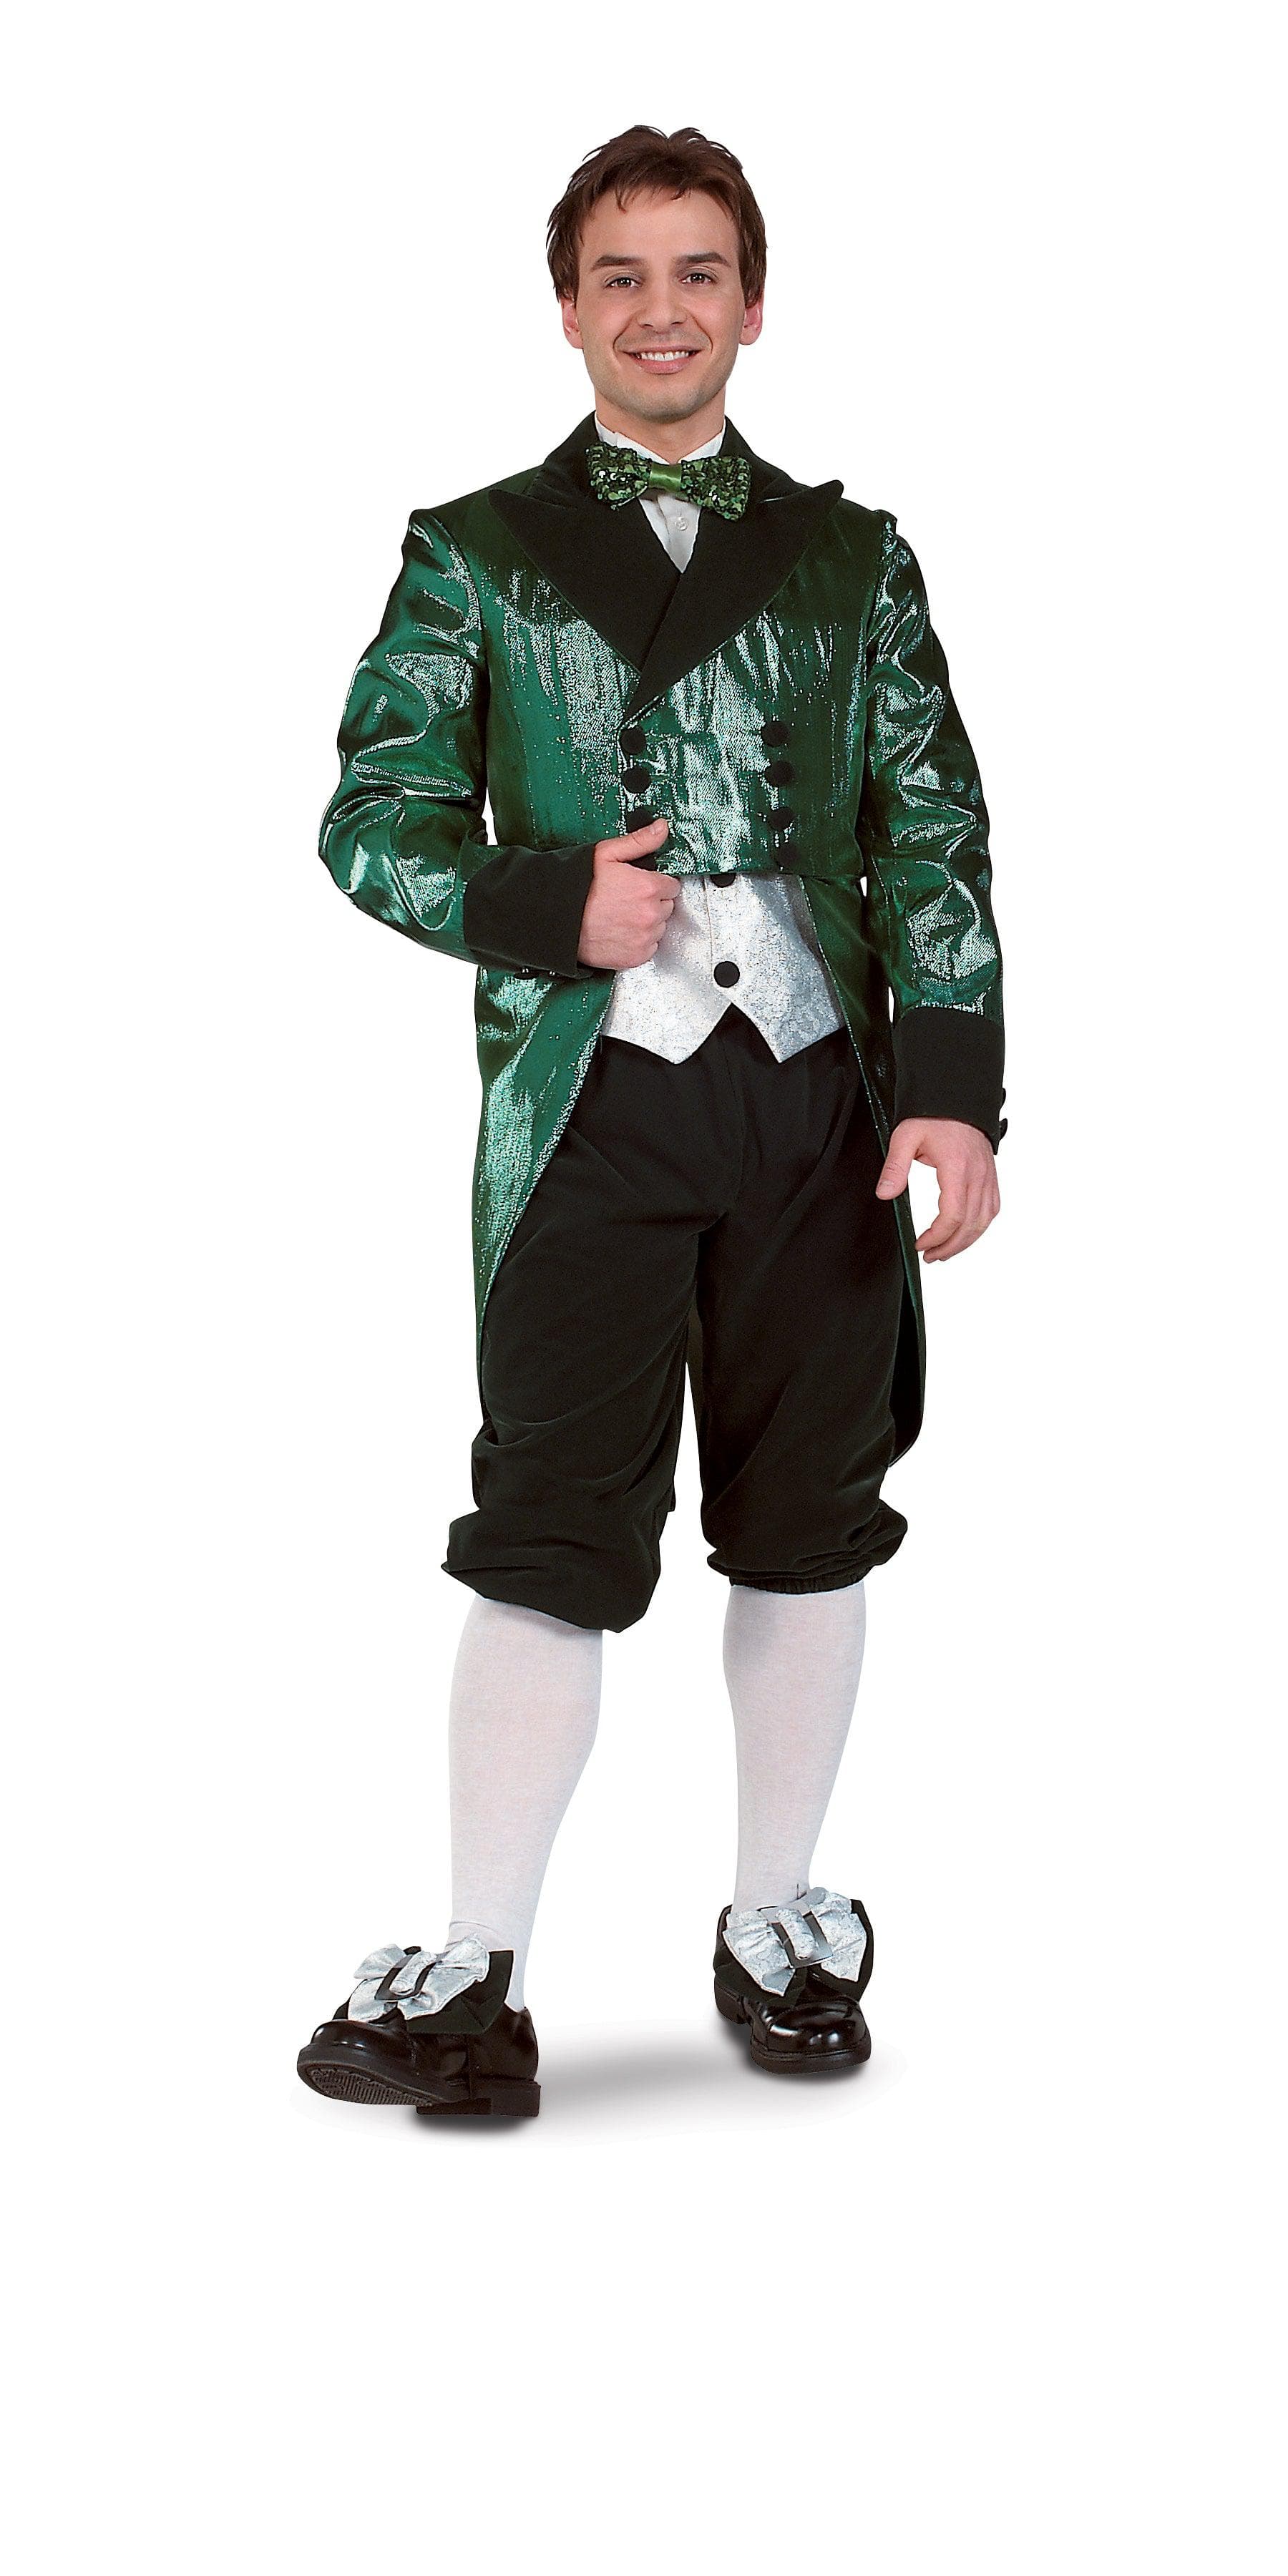 Adult Premium Deluxe Leprechaun Costume - costumes.com